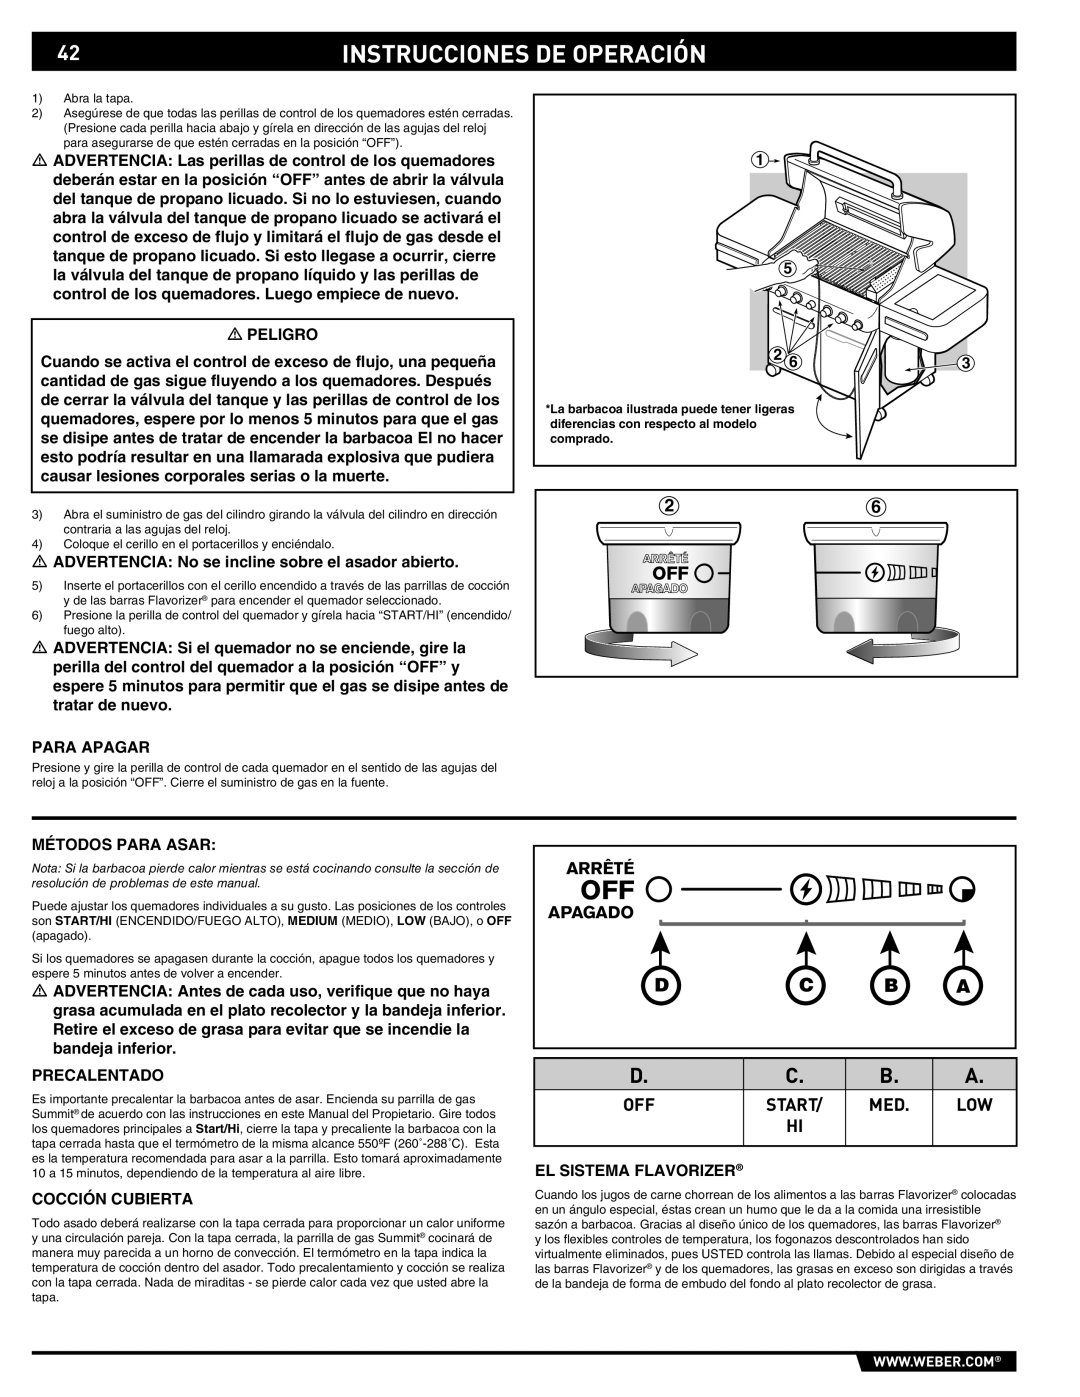 Summit 89190 manual Instrucciones De Operación, D C B A, Arrêté, Apagado 